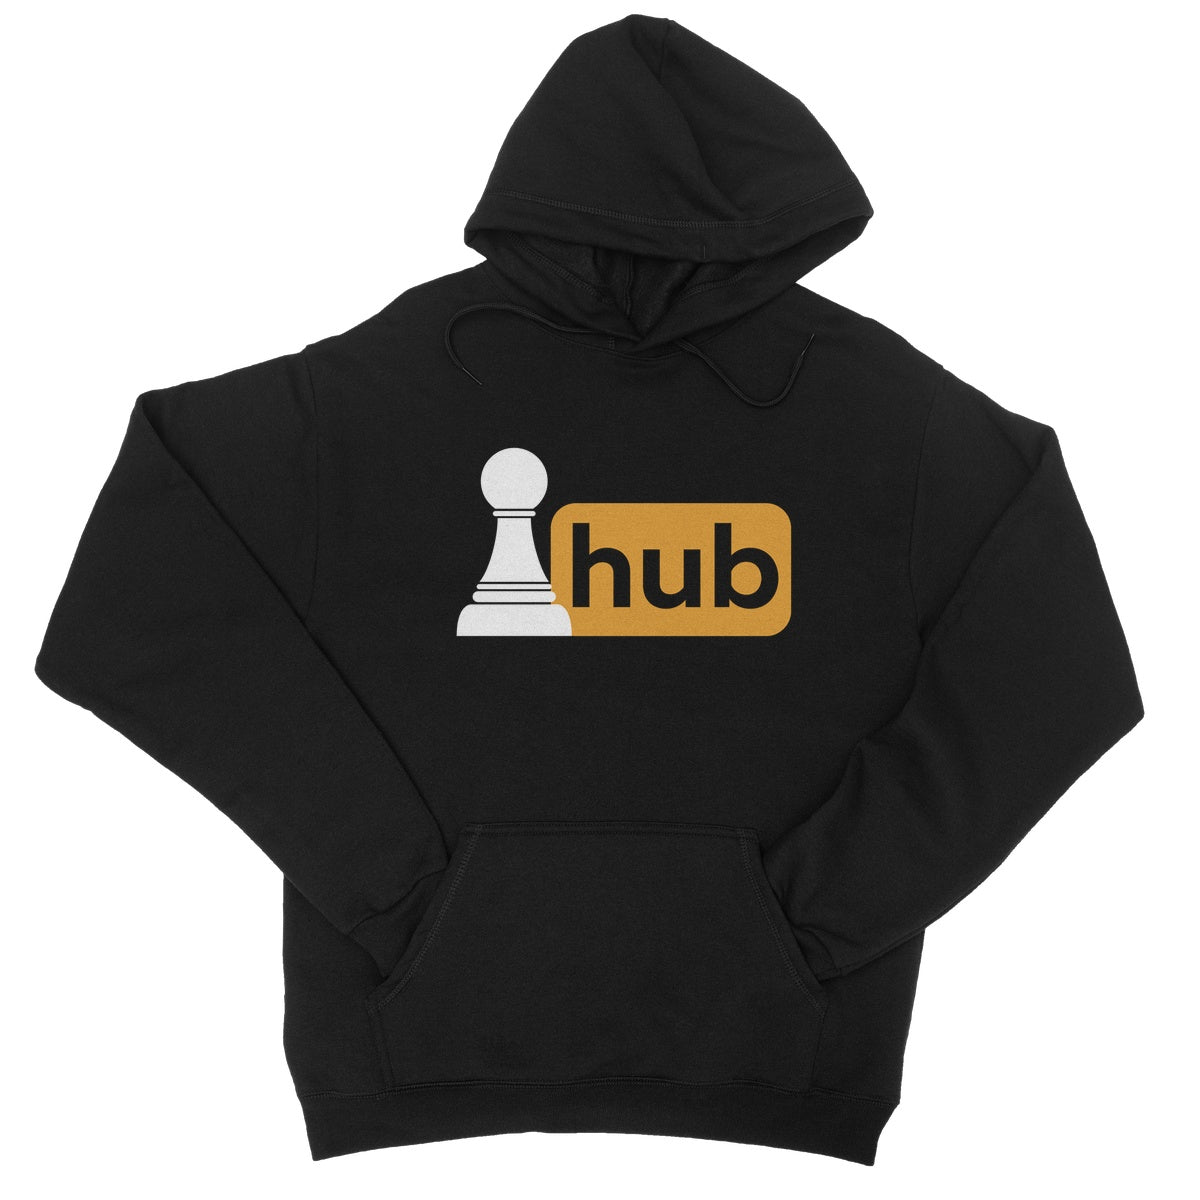 pawn hub hoodie black